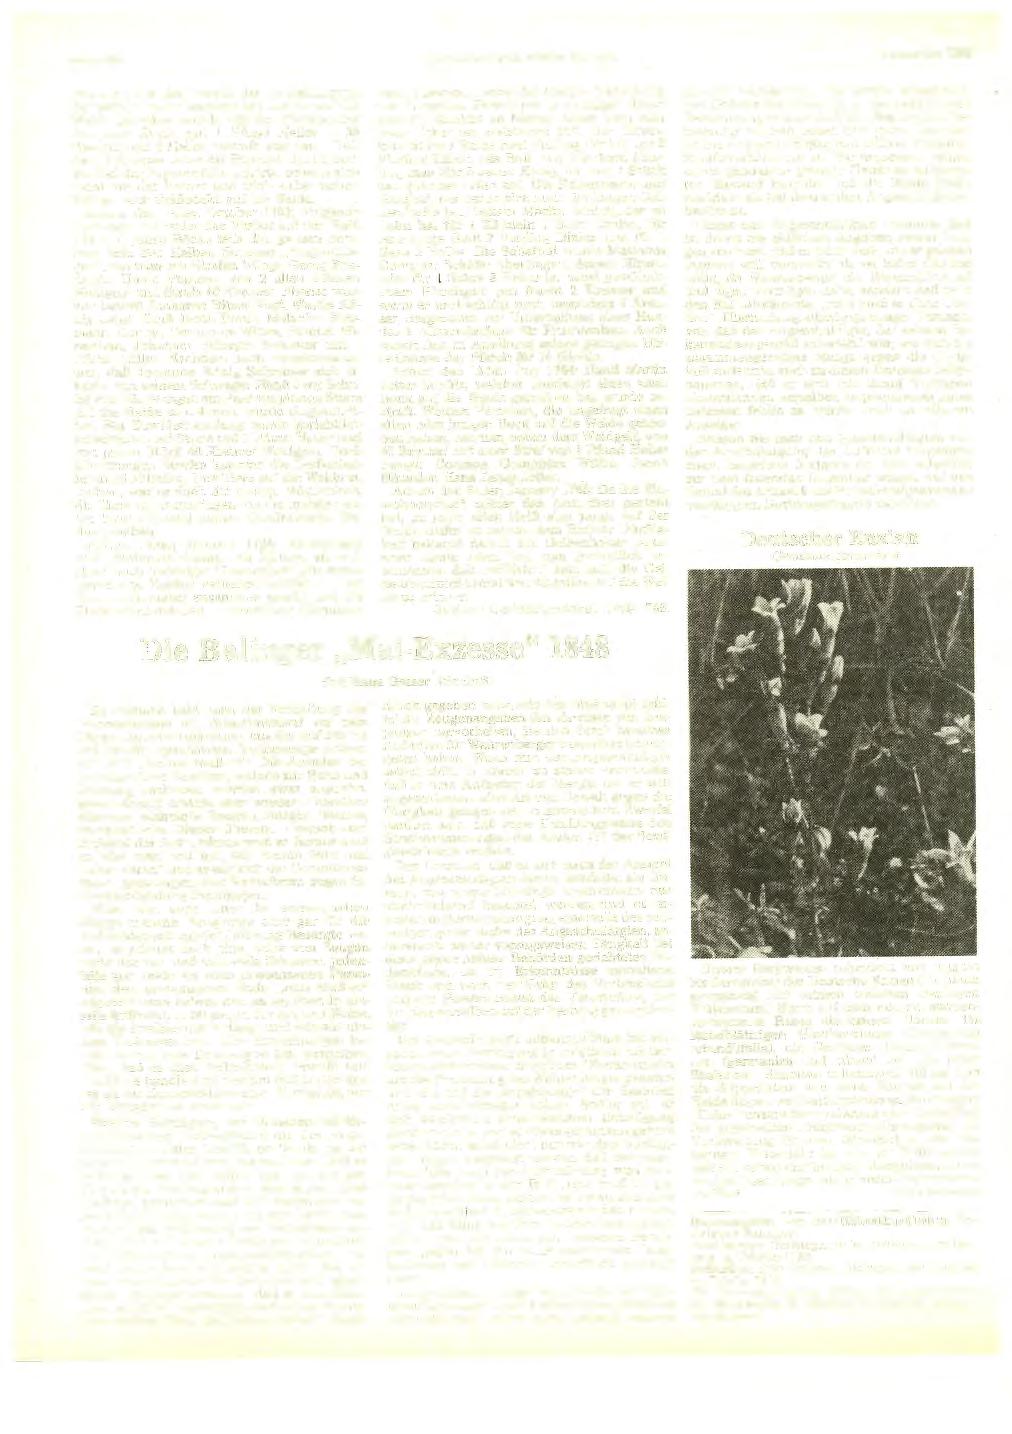 Seite 420 Heimatkundliehe Blätter Balingen September 1983 Papierer, der das Verbot der "ausschlagung der Böckh" nicht beachtet hat und sie auf die Weide getrieben wurde mit der Fleckenstraf für jedes